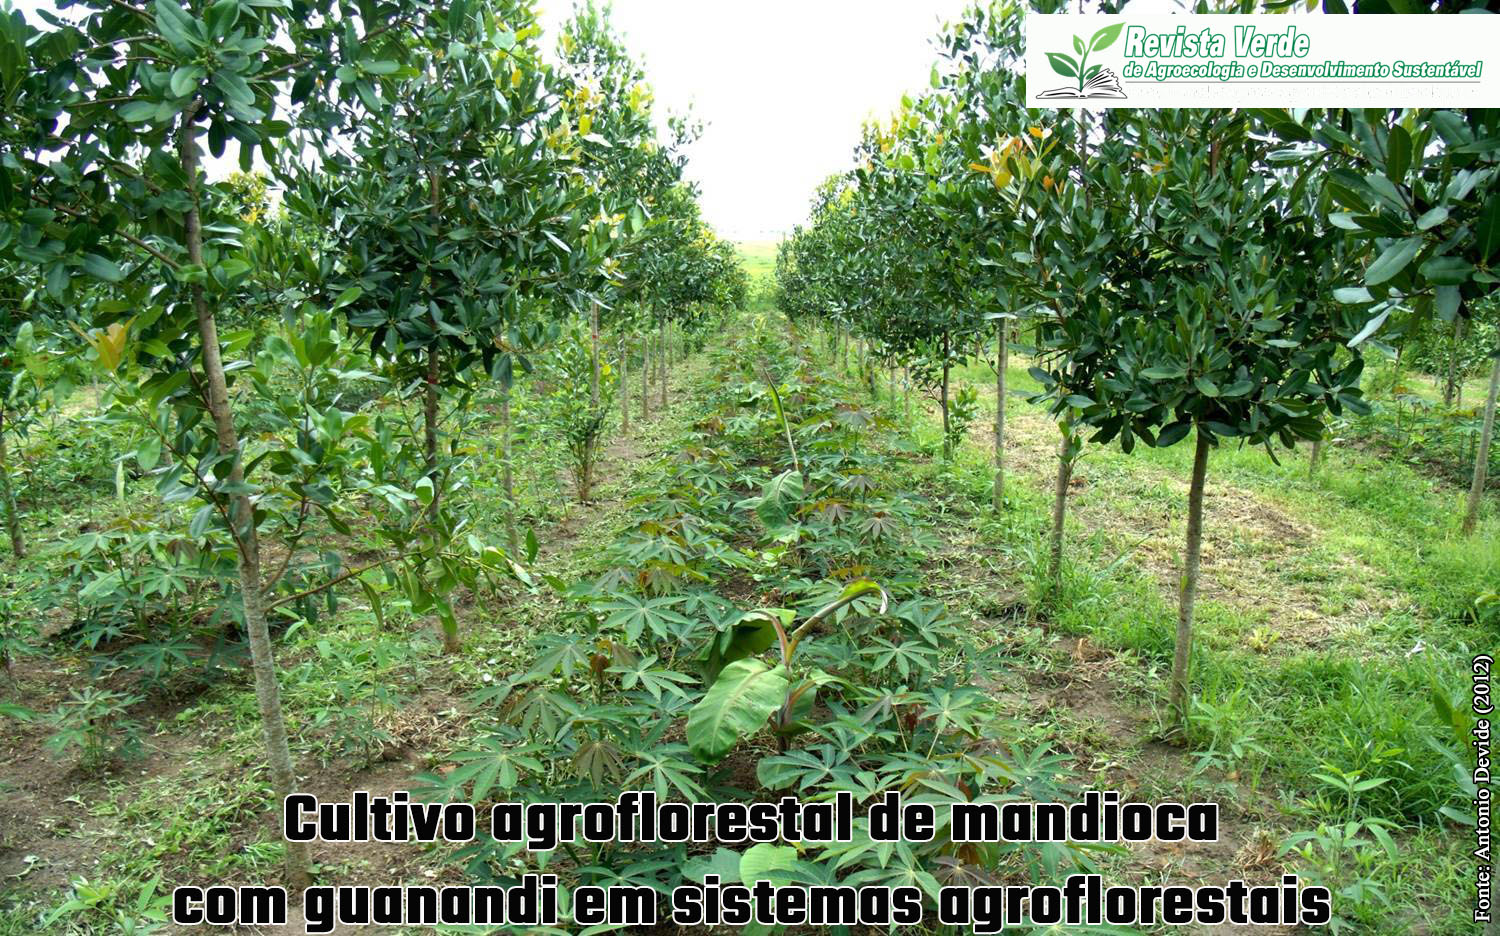 Crescimento do guanandi e produção de mandioca e araruta em sistemas agroflorestais